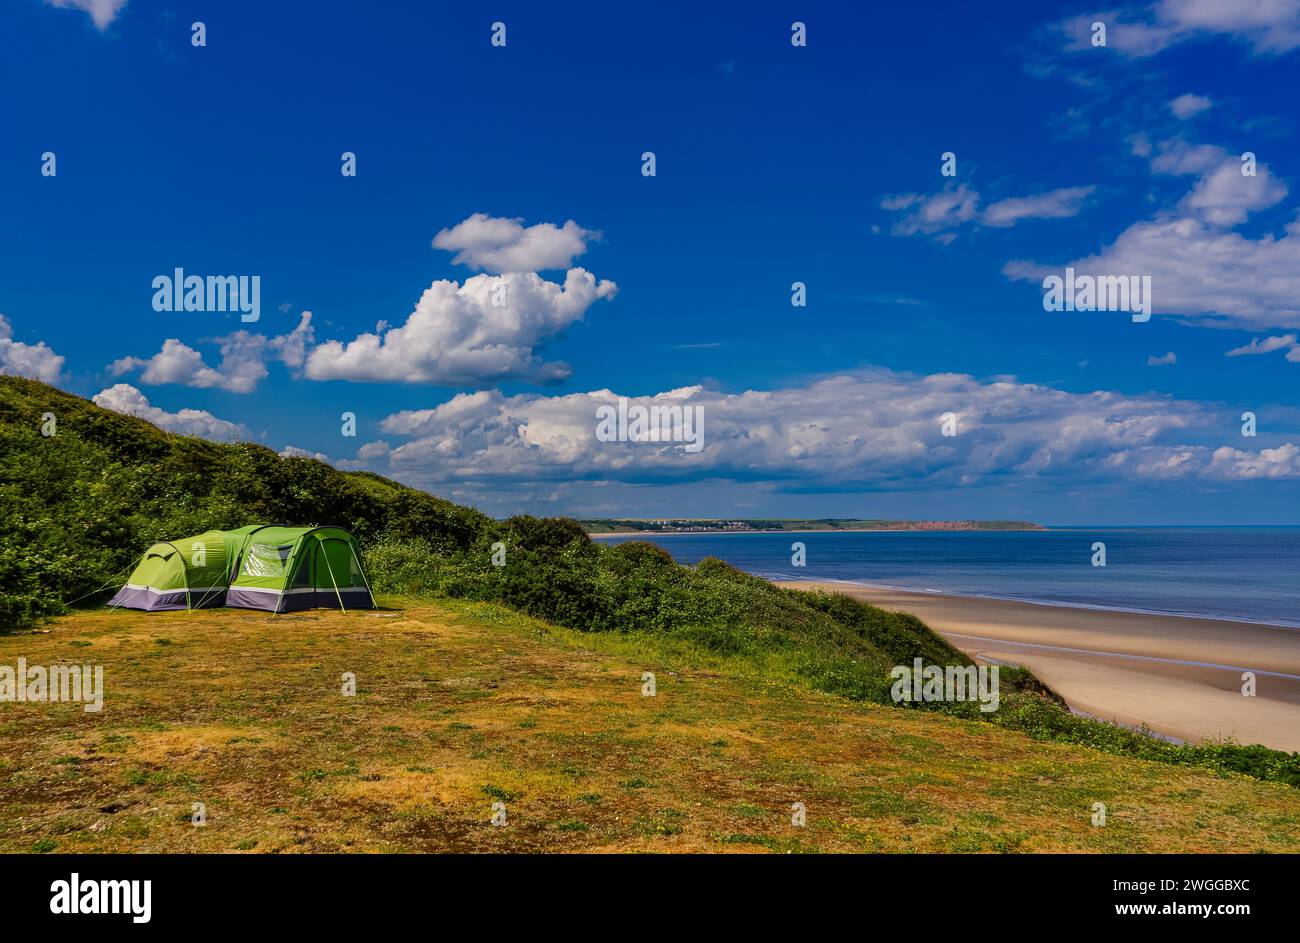 Wild Camping. Tienda de campaña en los acantilados cerca de la playa. Foto de stock